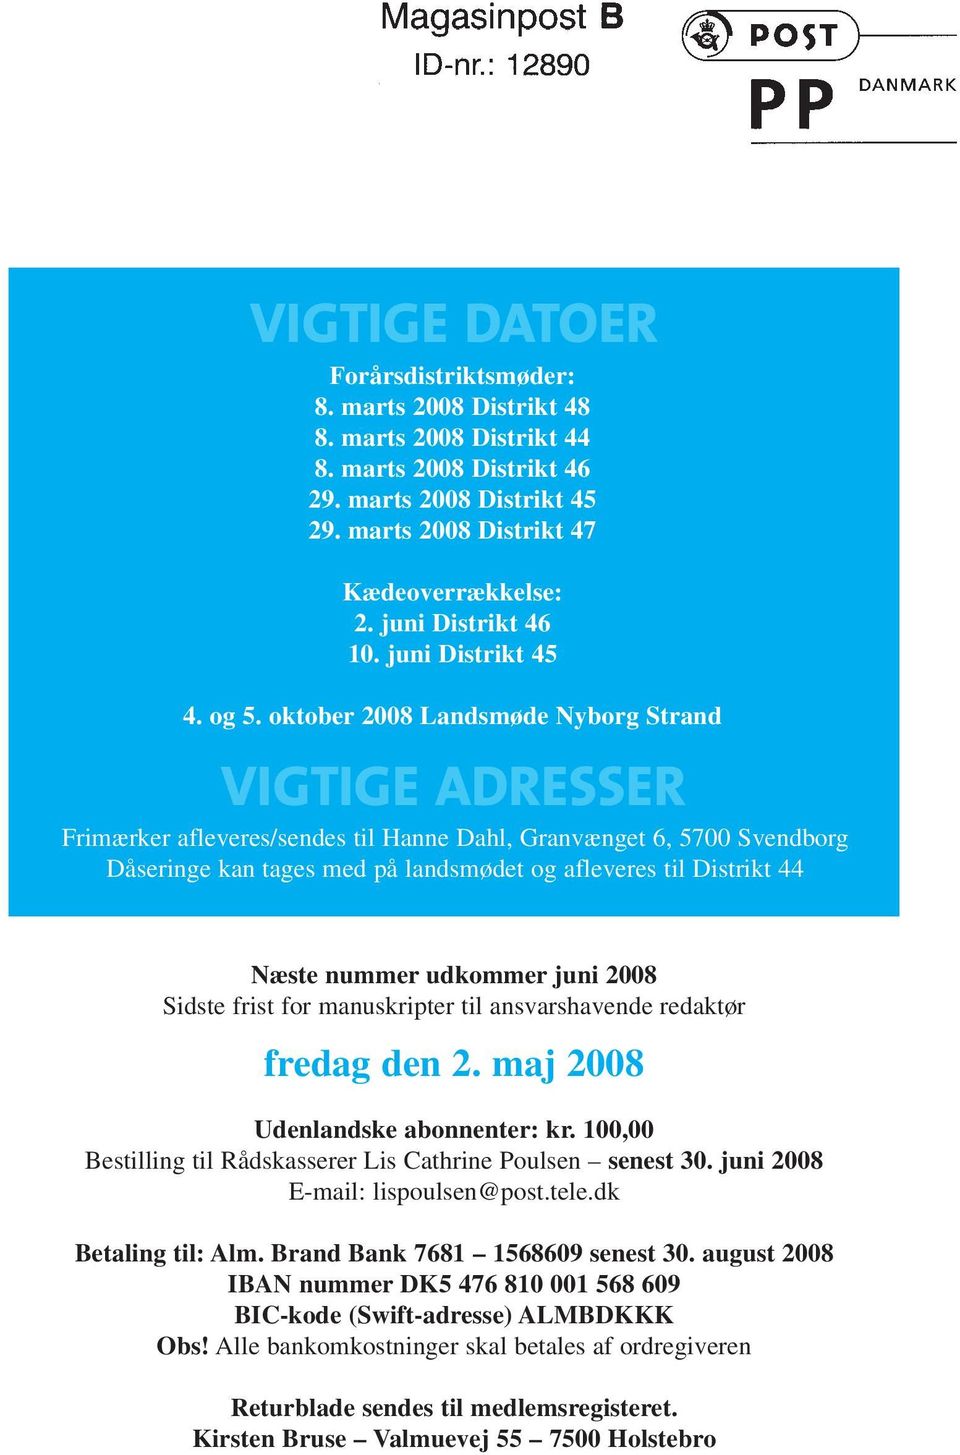 oktober 2008 Landsmøde Nyborg Strand VIGTIGE ADRESSER Frimærker afleveres/sendes til Hanne Dahl, Granvænget 6, 5700 Svendborg Dåseringe kan tages med på landsmødet og afleveres til Distrikt 44 Næste